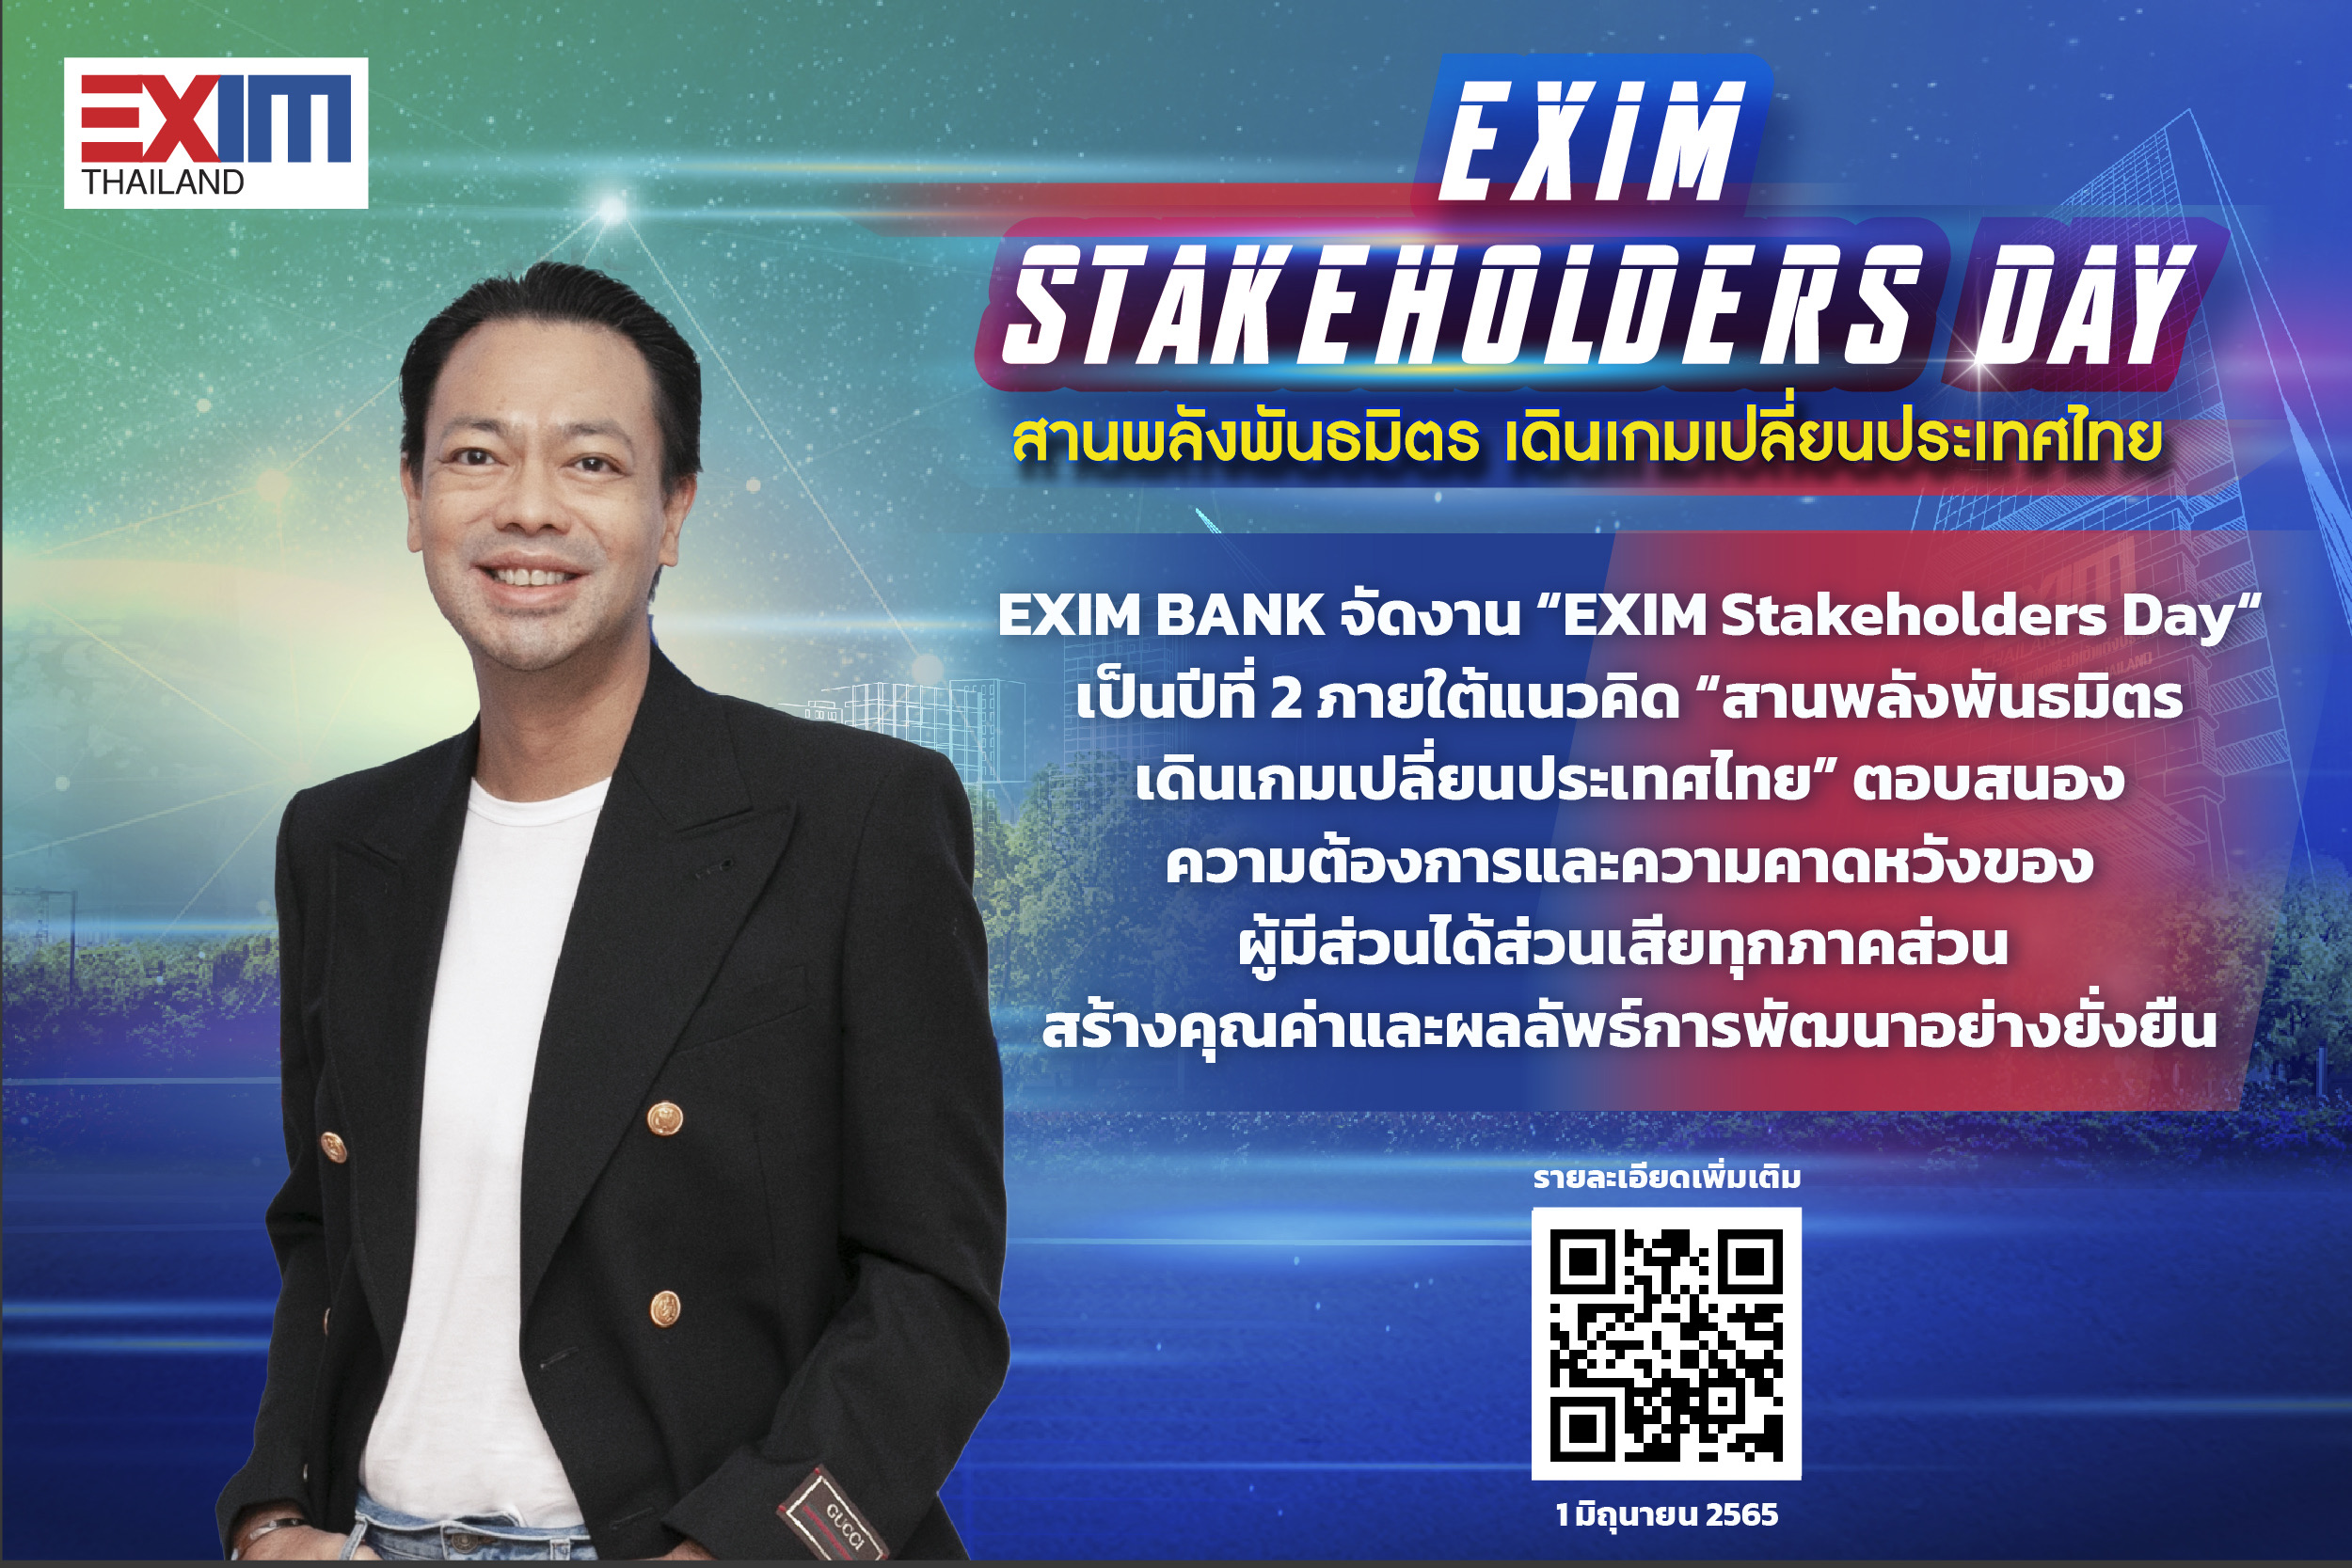 EXIM BANK เปิดเวทีรับฟังเสียงผู้มีส่วนได้ส่วนเสียขับเคลื่อนการพัฒนาอย่างยั่งยืนในงาน EXIM Stakeholders Day “สานพลังพันธมิตร เดินเกมเปลี่ยนประเทศไทย”